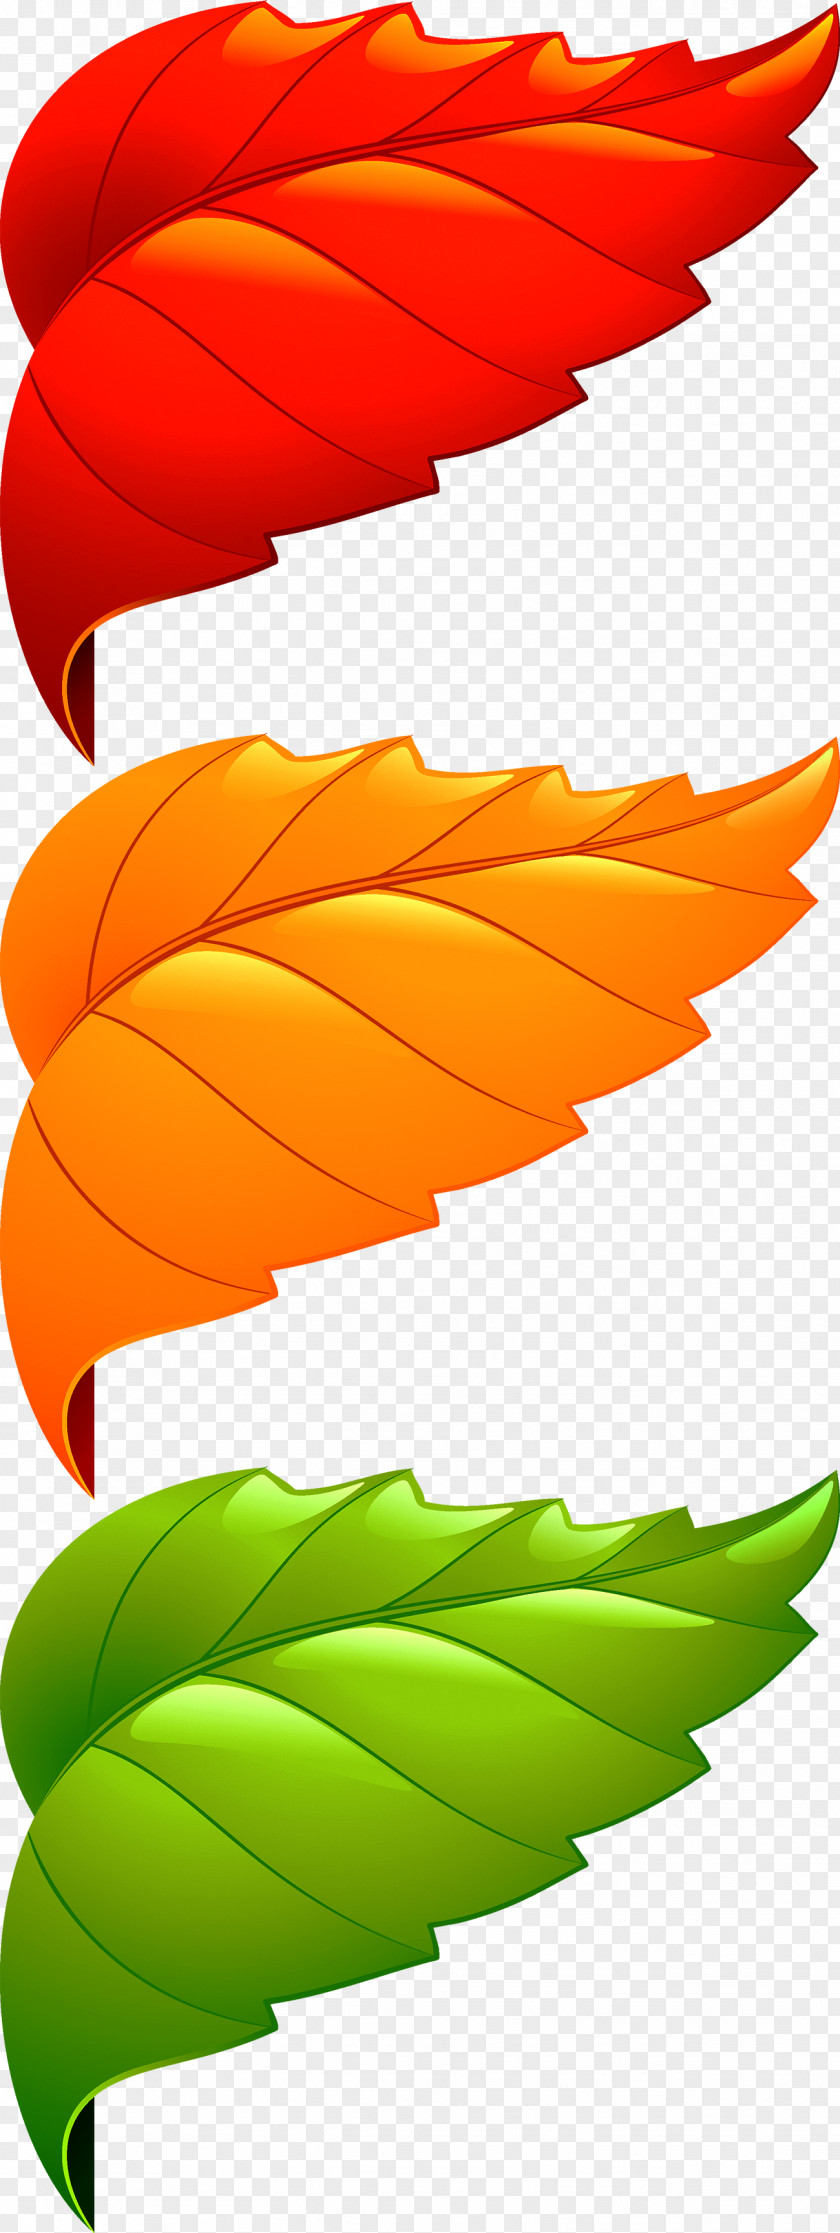 Corner Decorative Leaves Maple Leaf Adobe Illustrator PNG